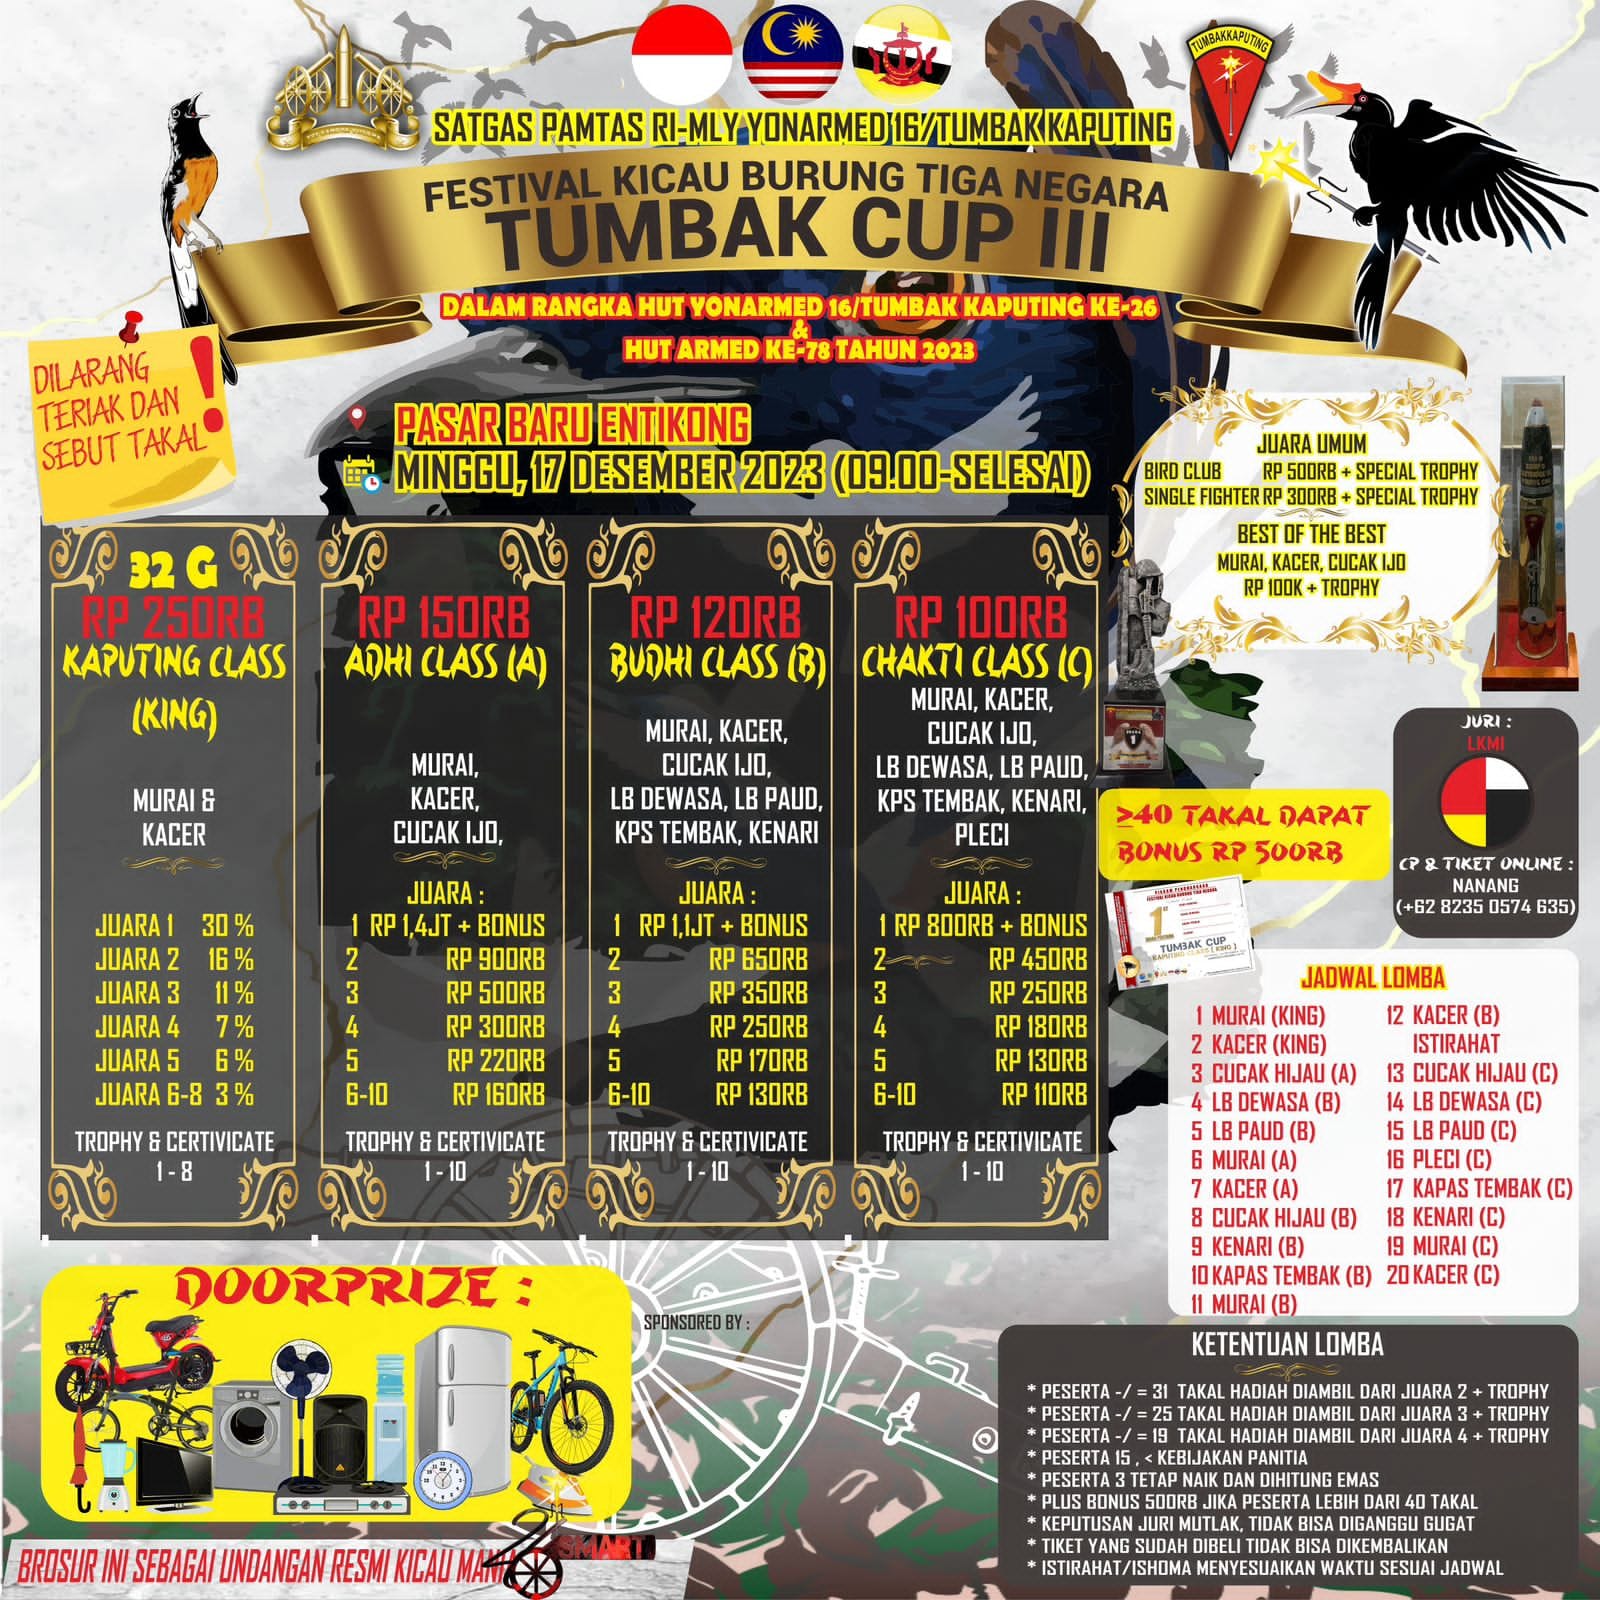 Festival Kicau Burung 3 Negara “TUMBAK CUP III” Dalam rangka HUT Yonarmed 16/TK ke-26 dan HUT Armed ke-78 Tahun 2023